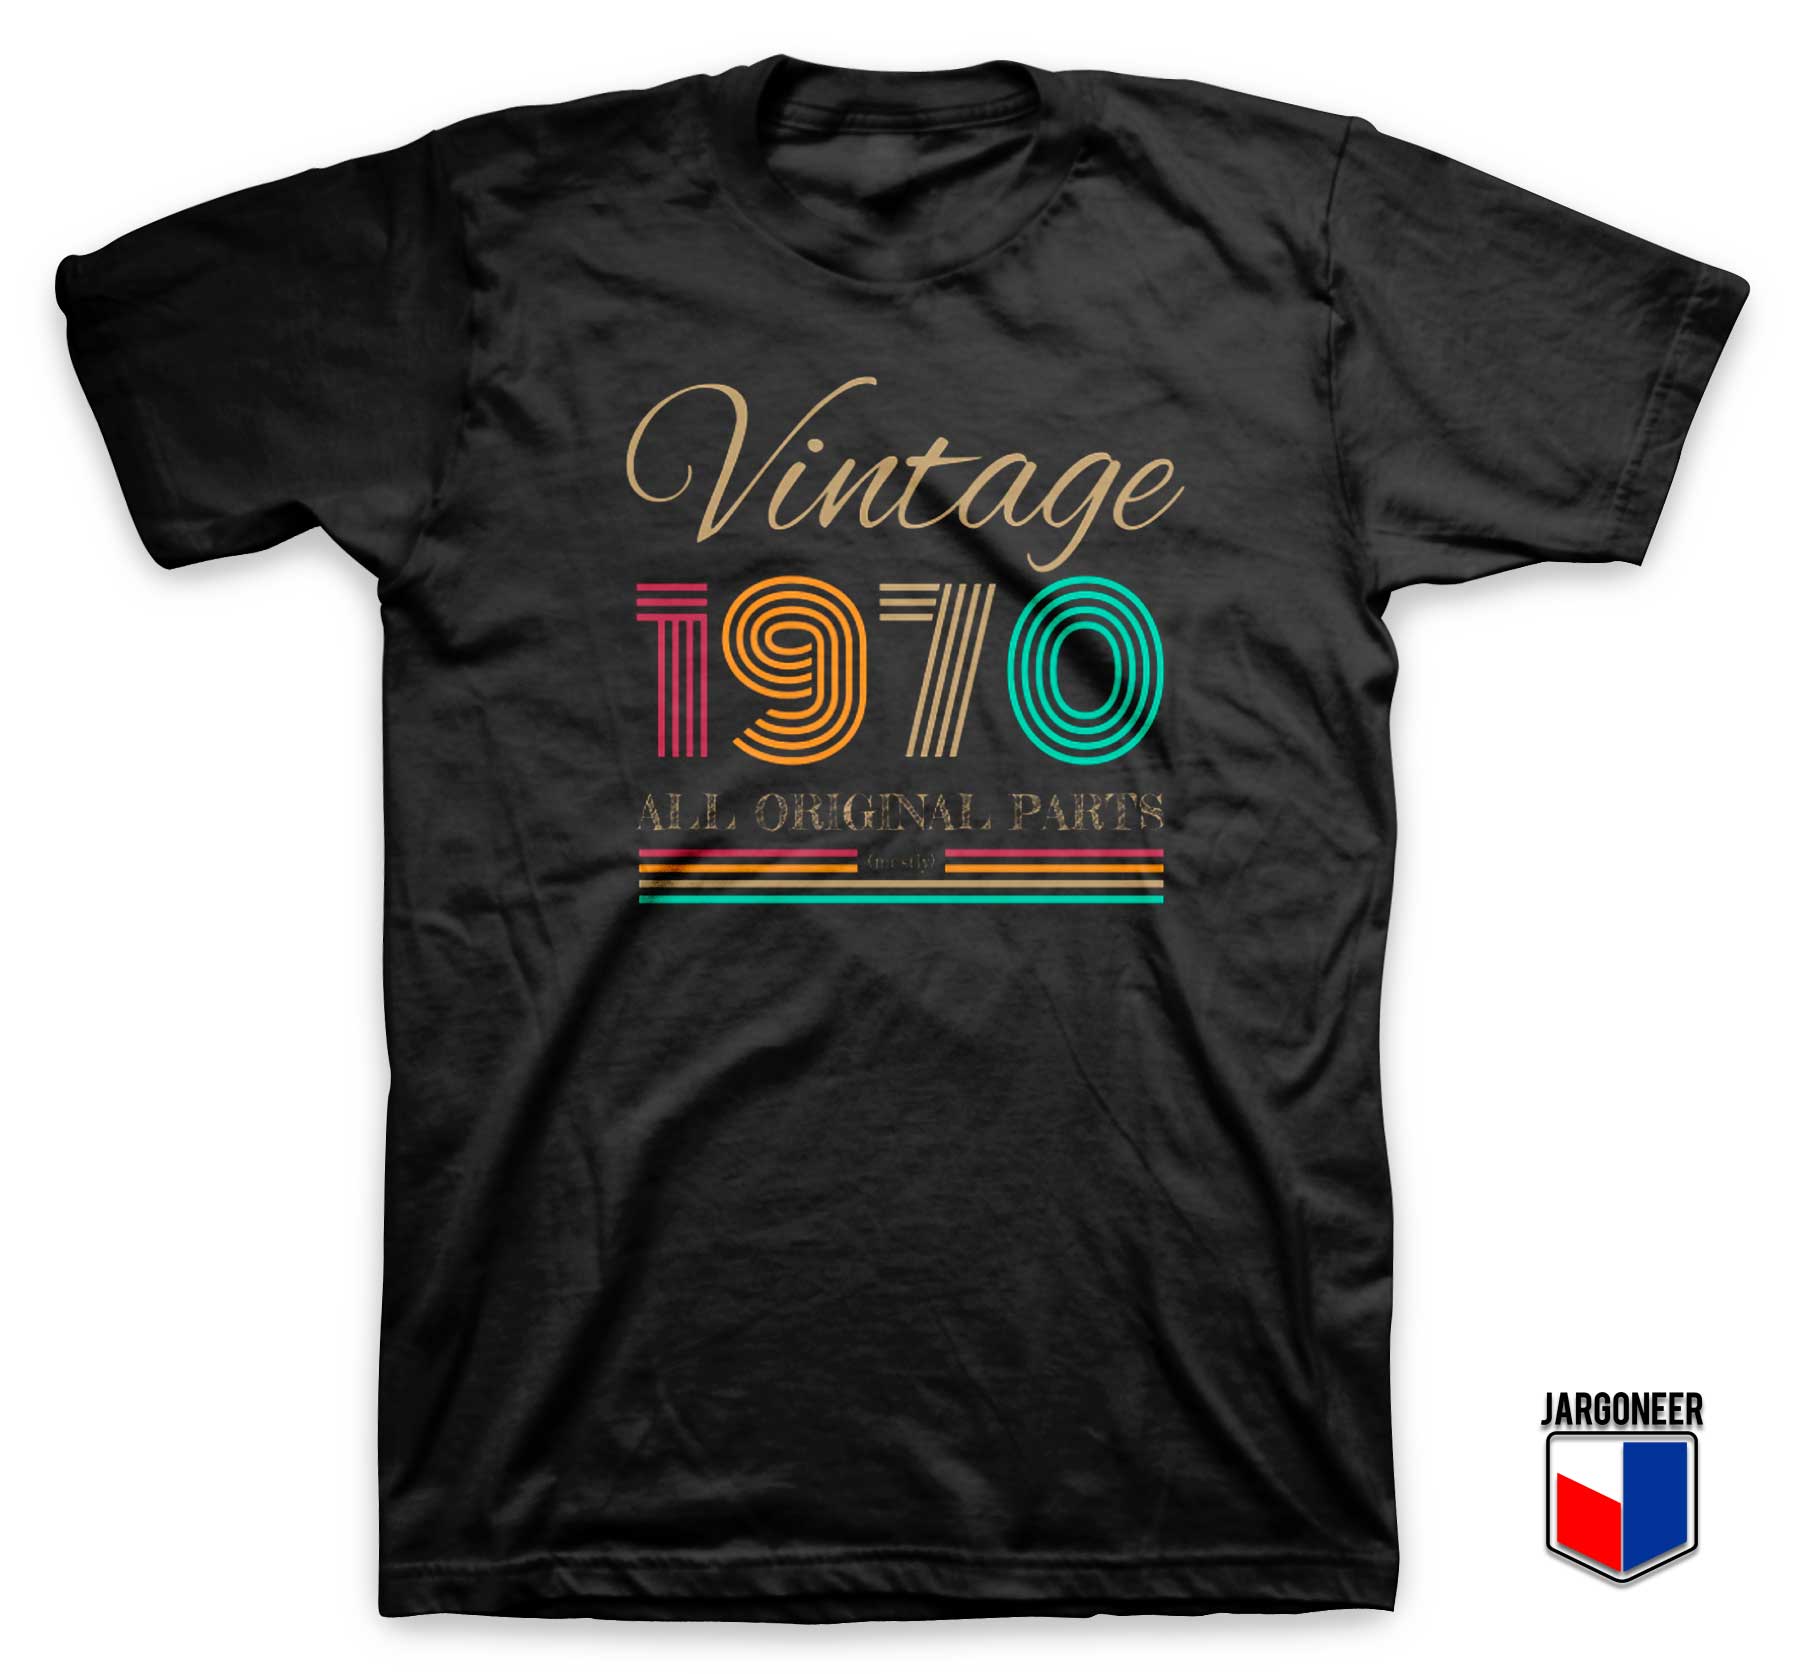 Vintage 1970 T Shirt - Shop Unique Graphic Cool Shirt Designs